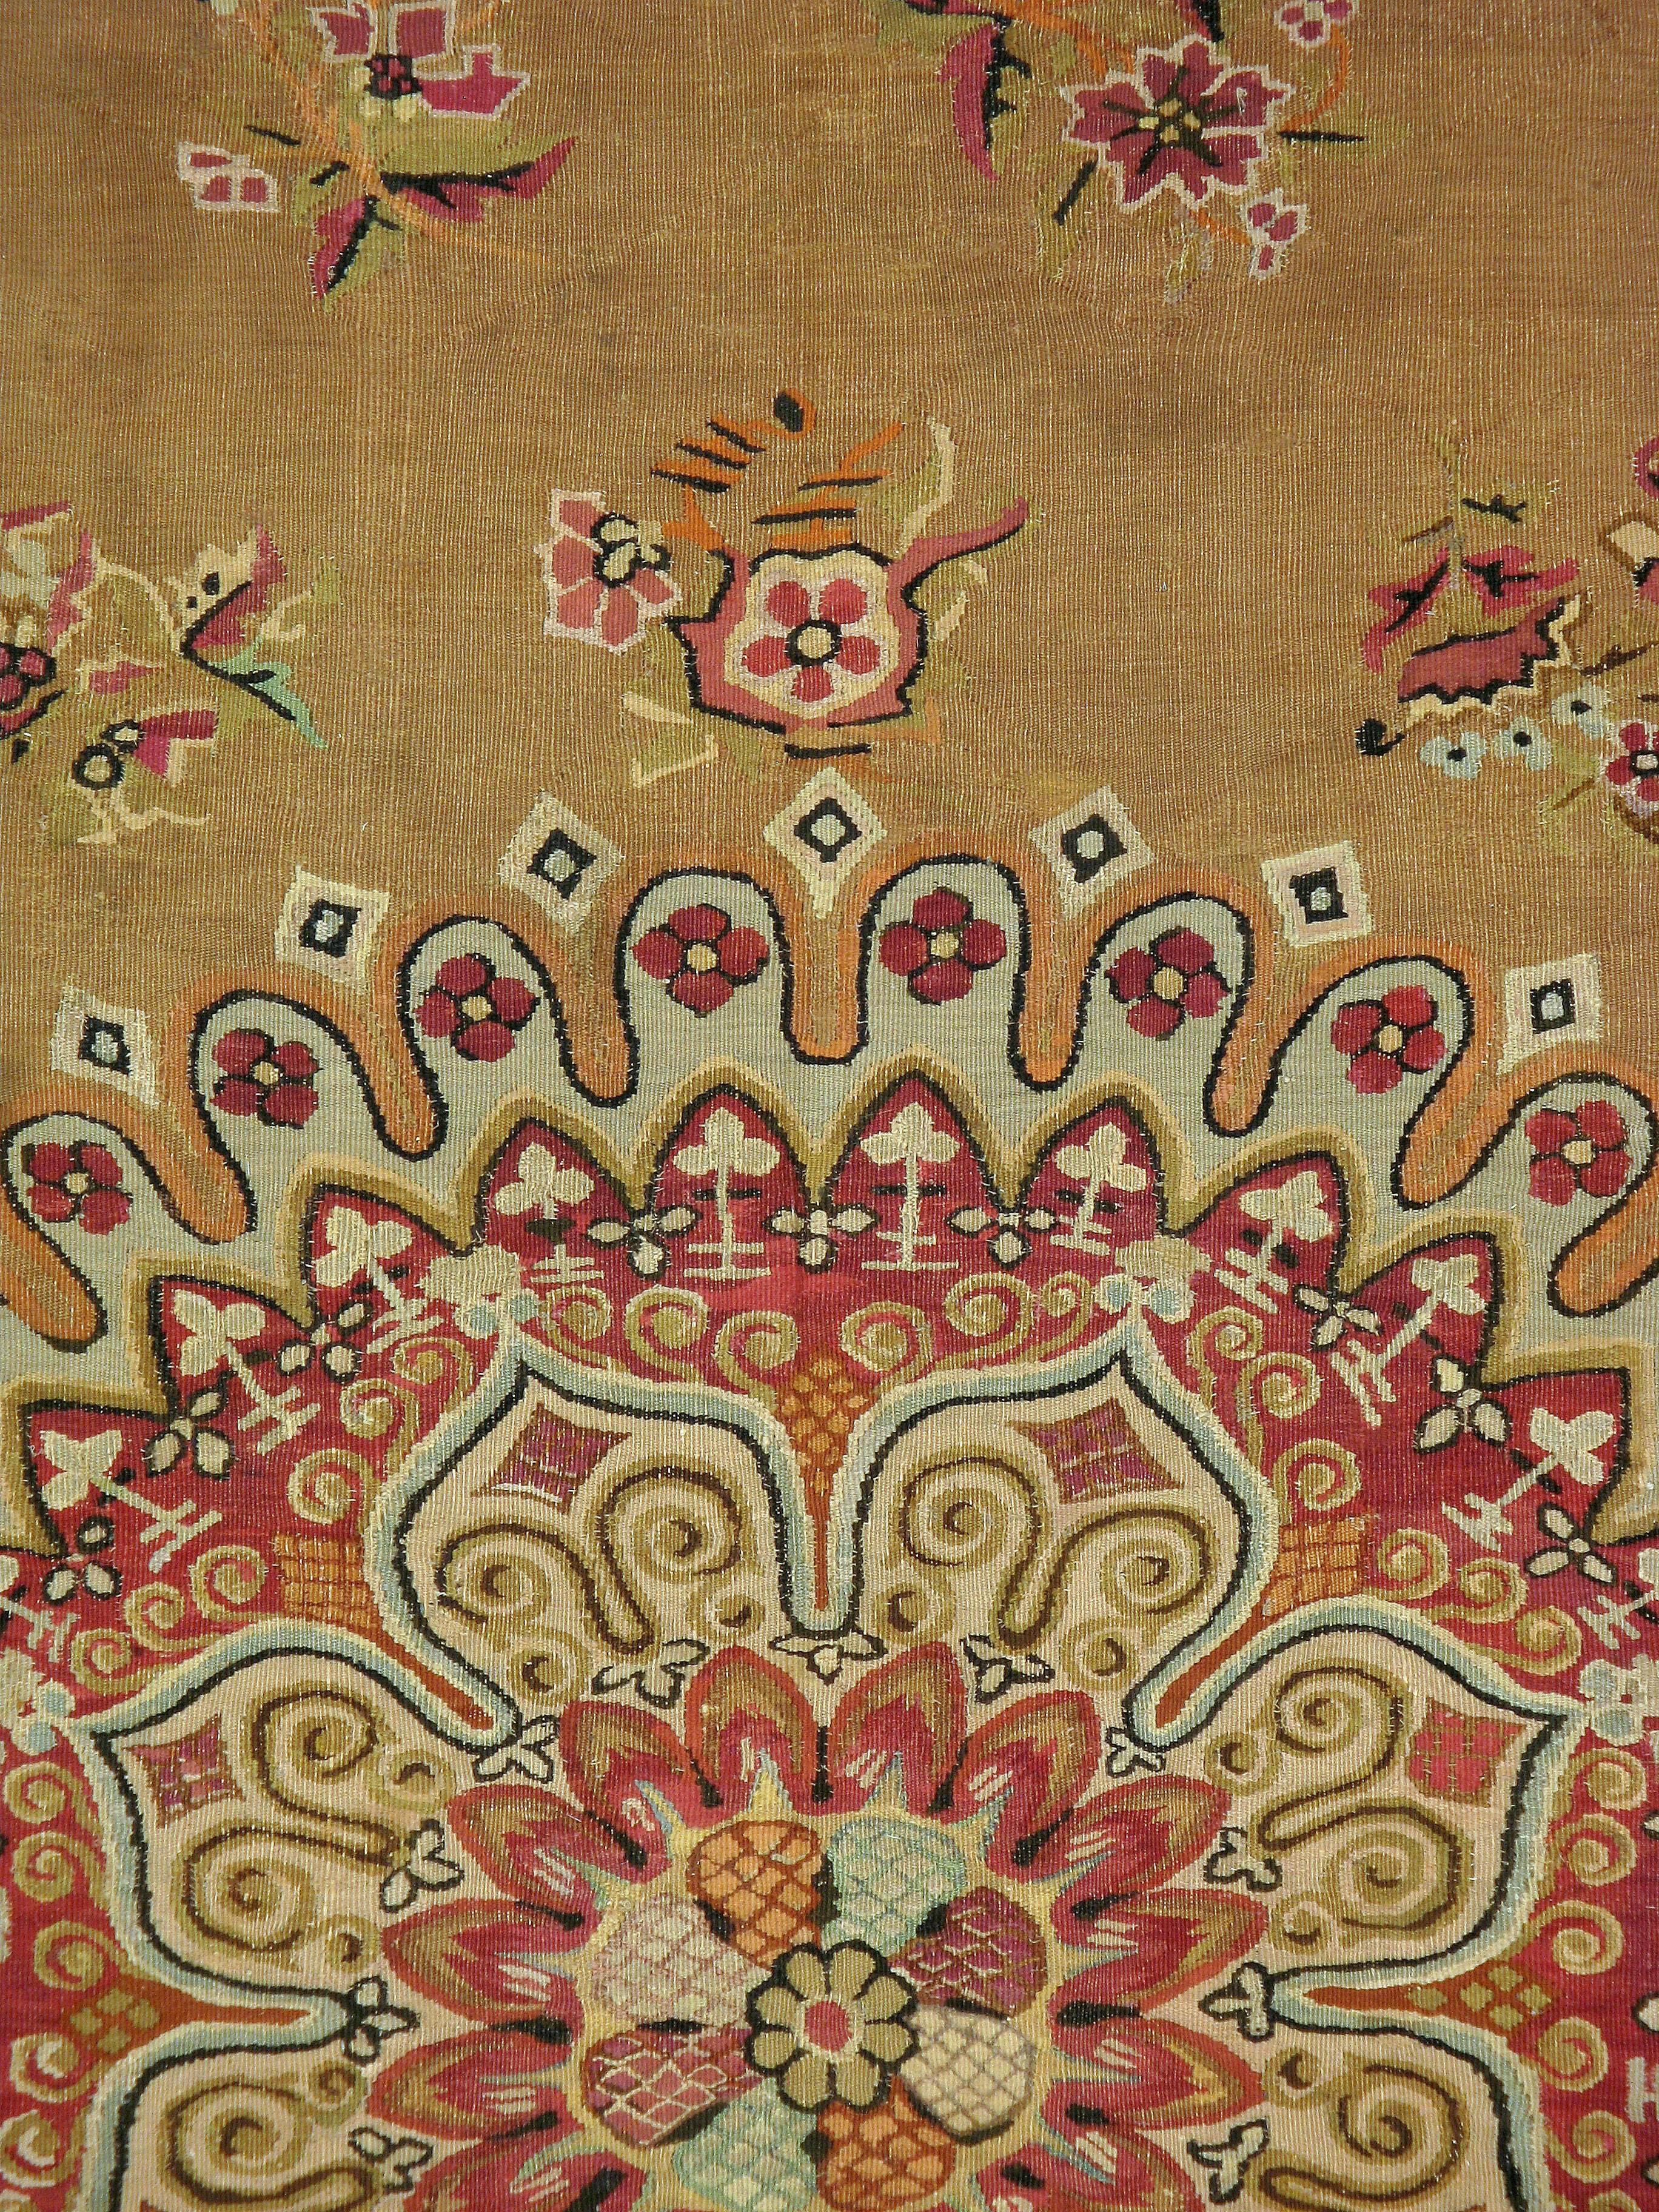 Un ancien tapis d'Aubusson français tissé à plat, datant du début du 20e siècle.